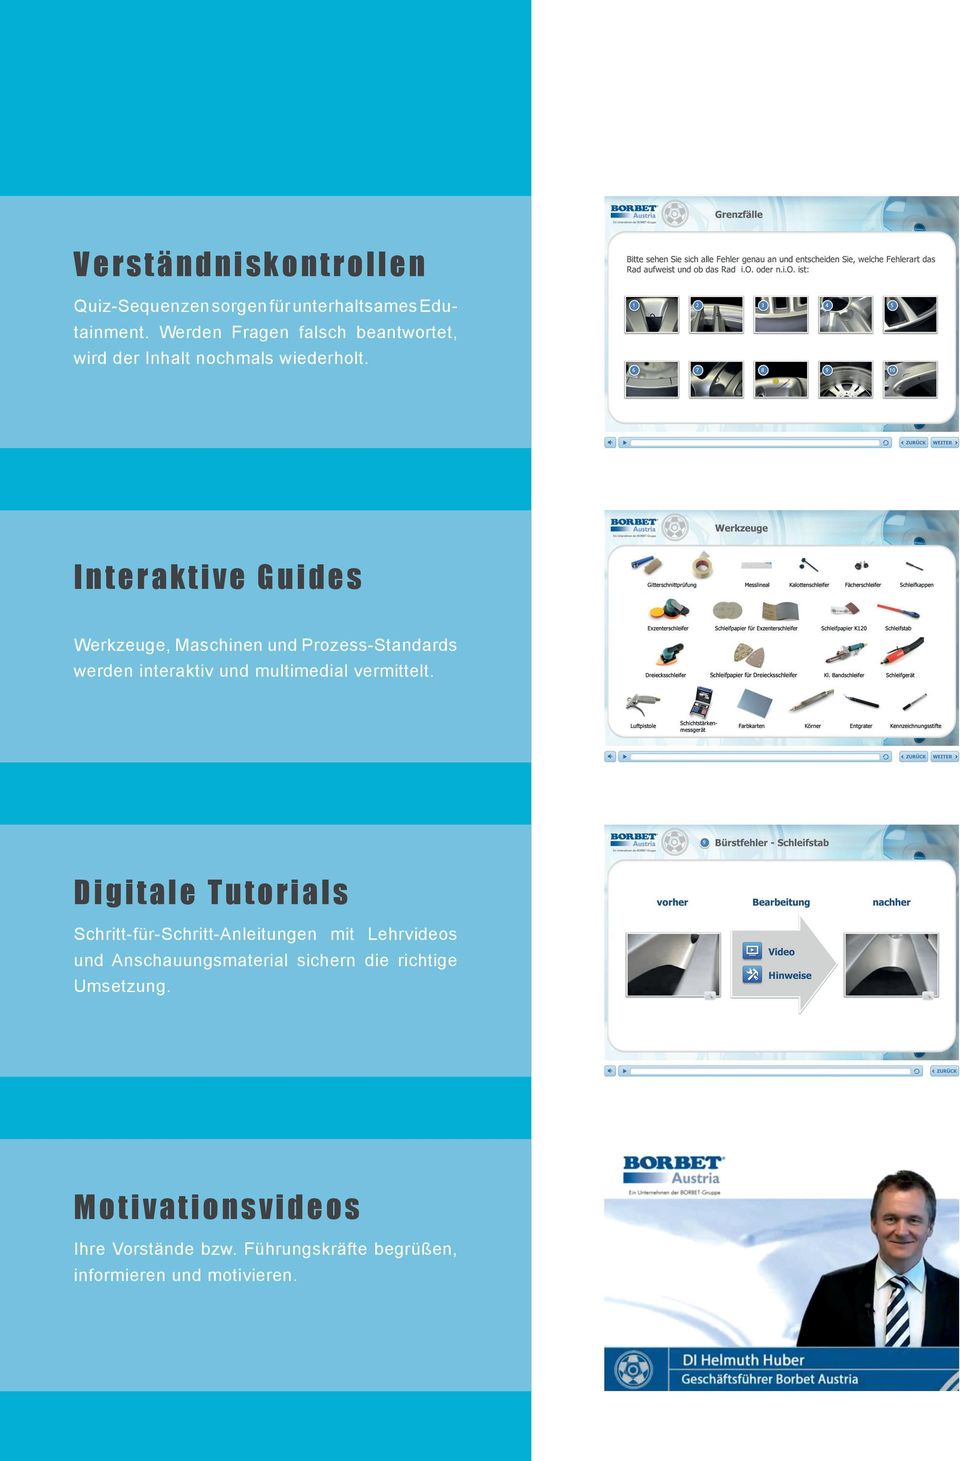 Interaktive Guides Werkzeuge, Maschinen und Prozess-Standards werden interaktiv und multimedial vermittelt.